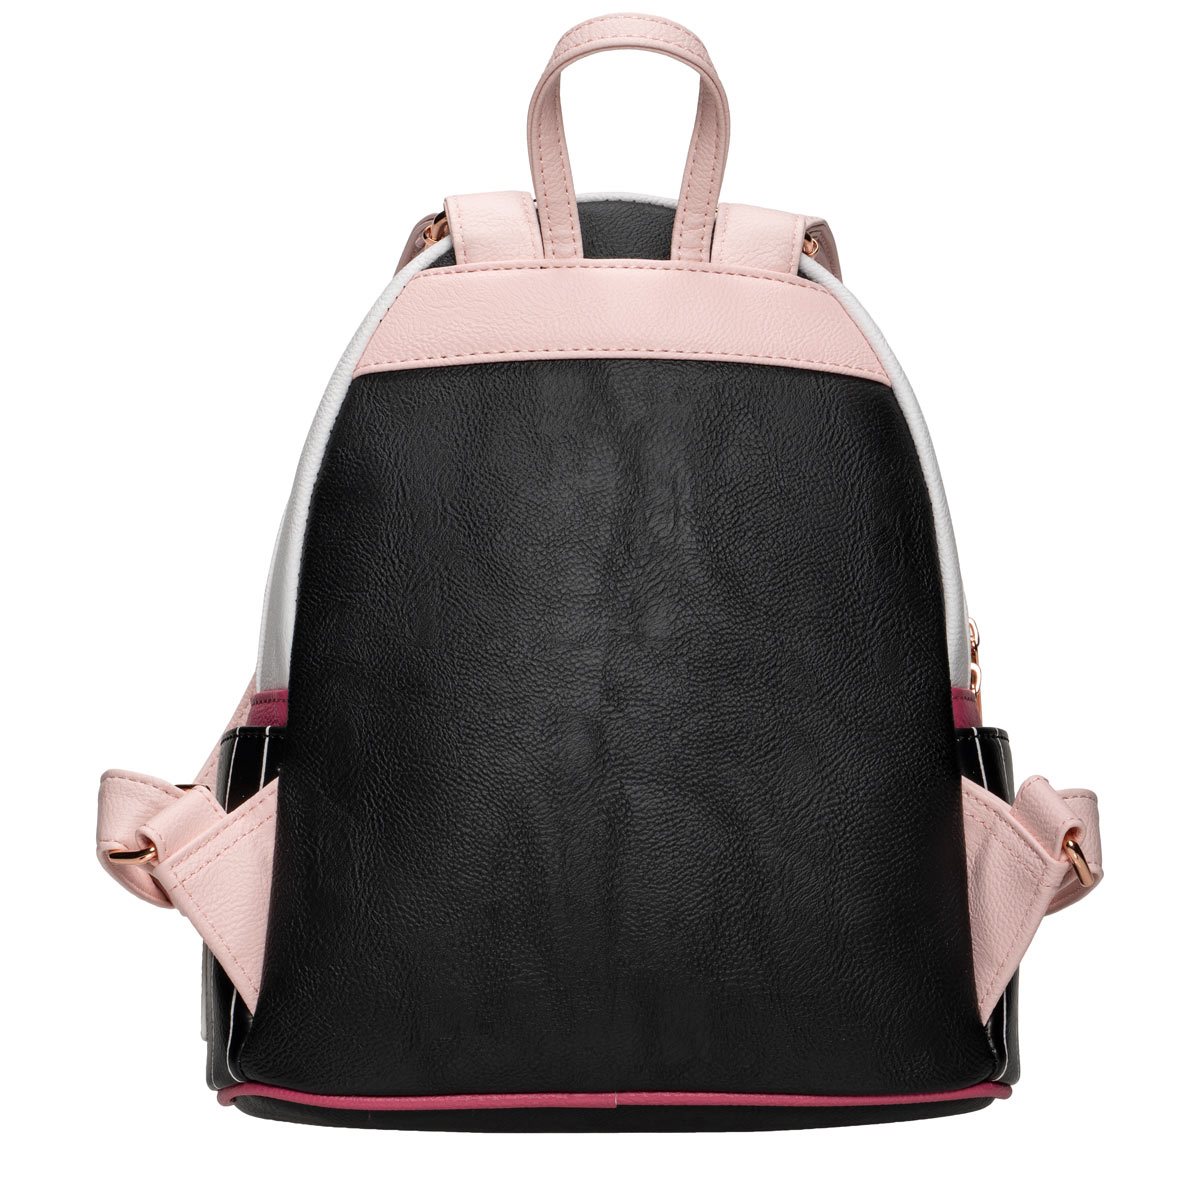 Calvin Klein Women's All Day Mini Backpack - Black